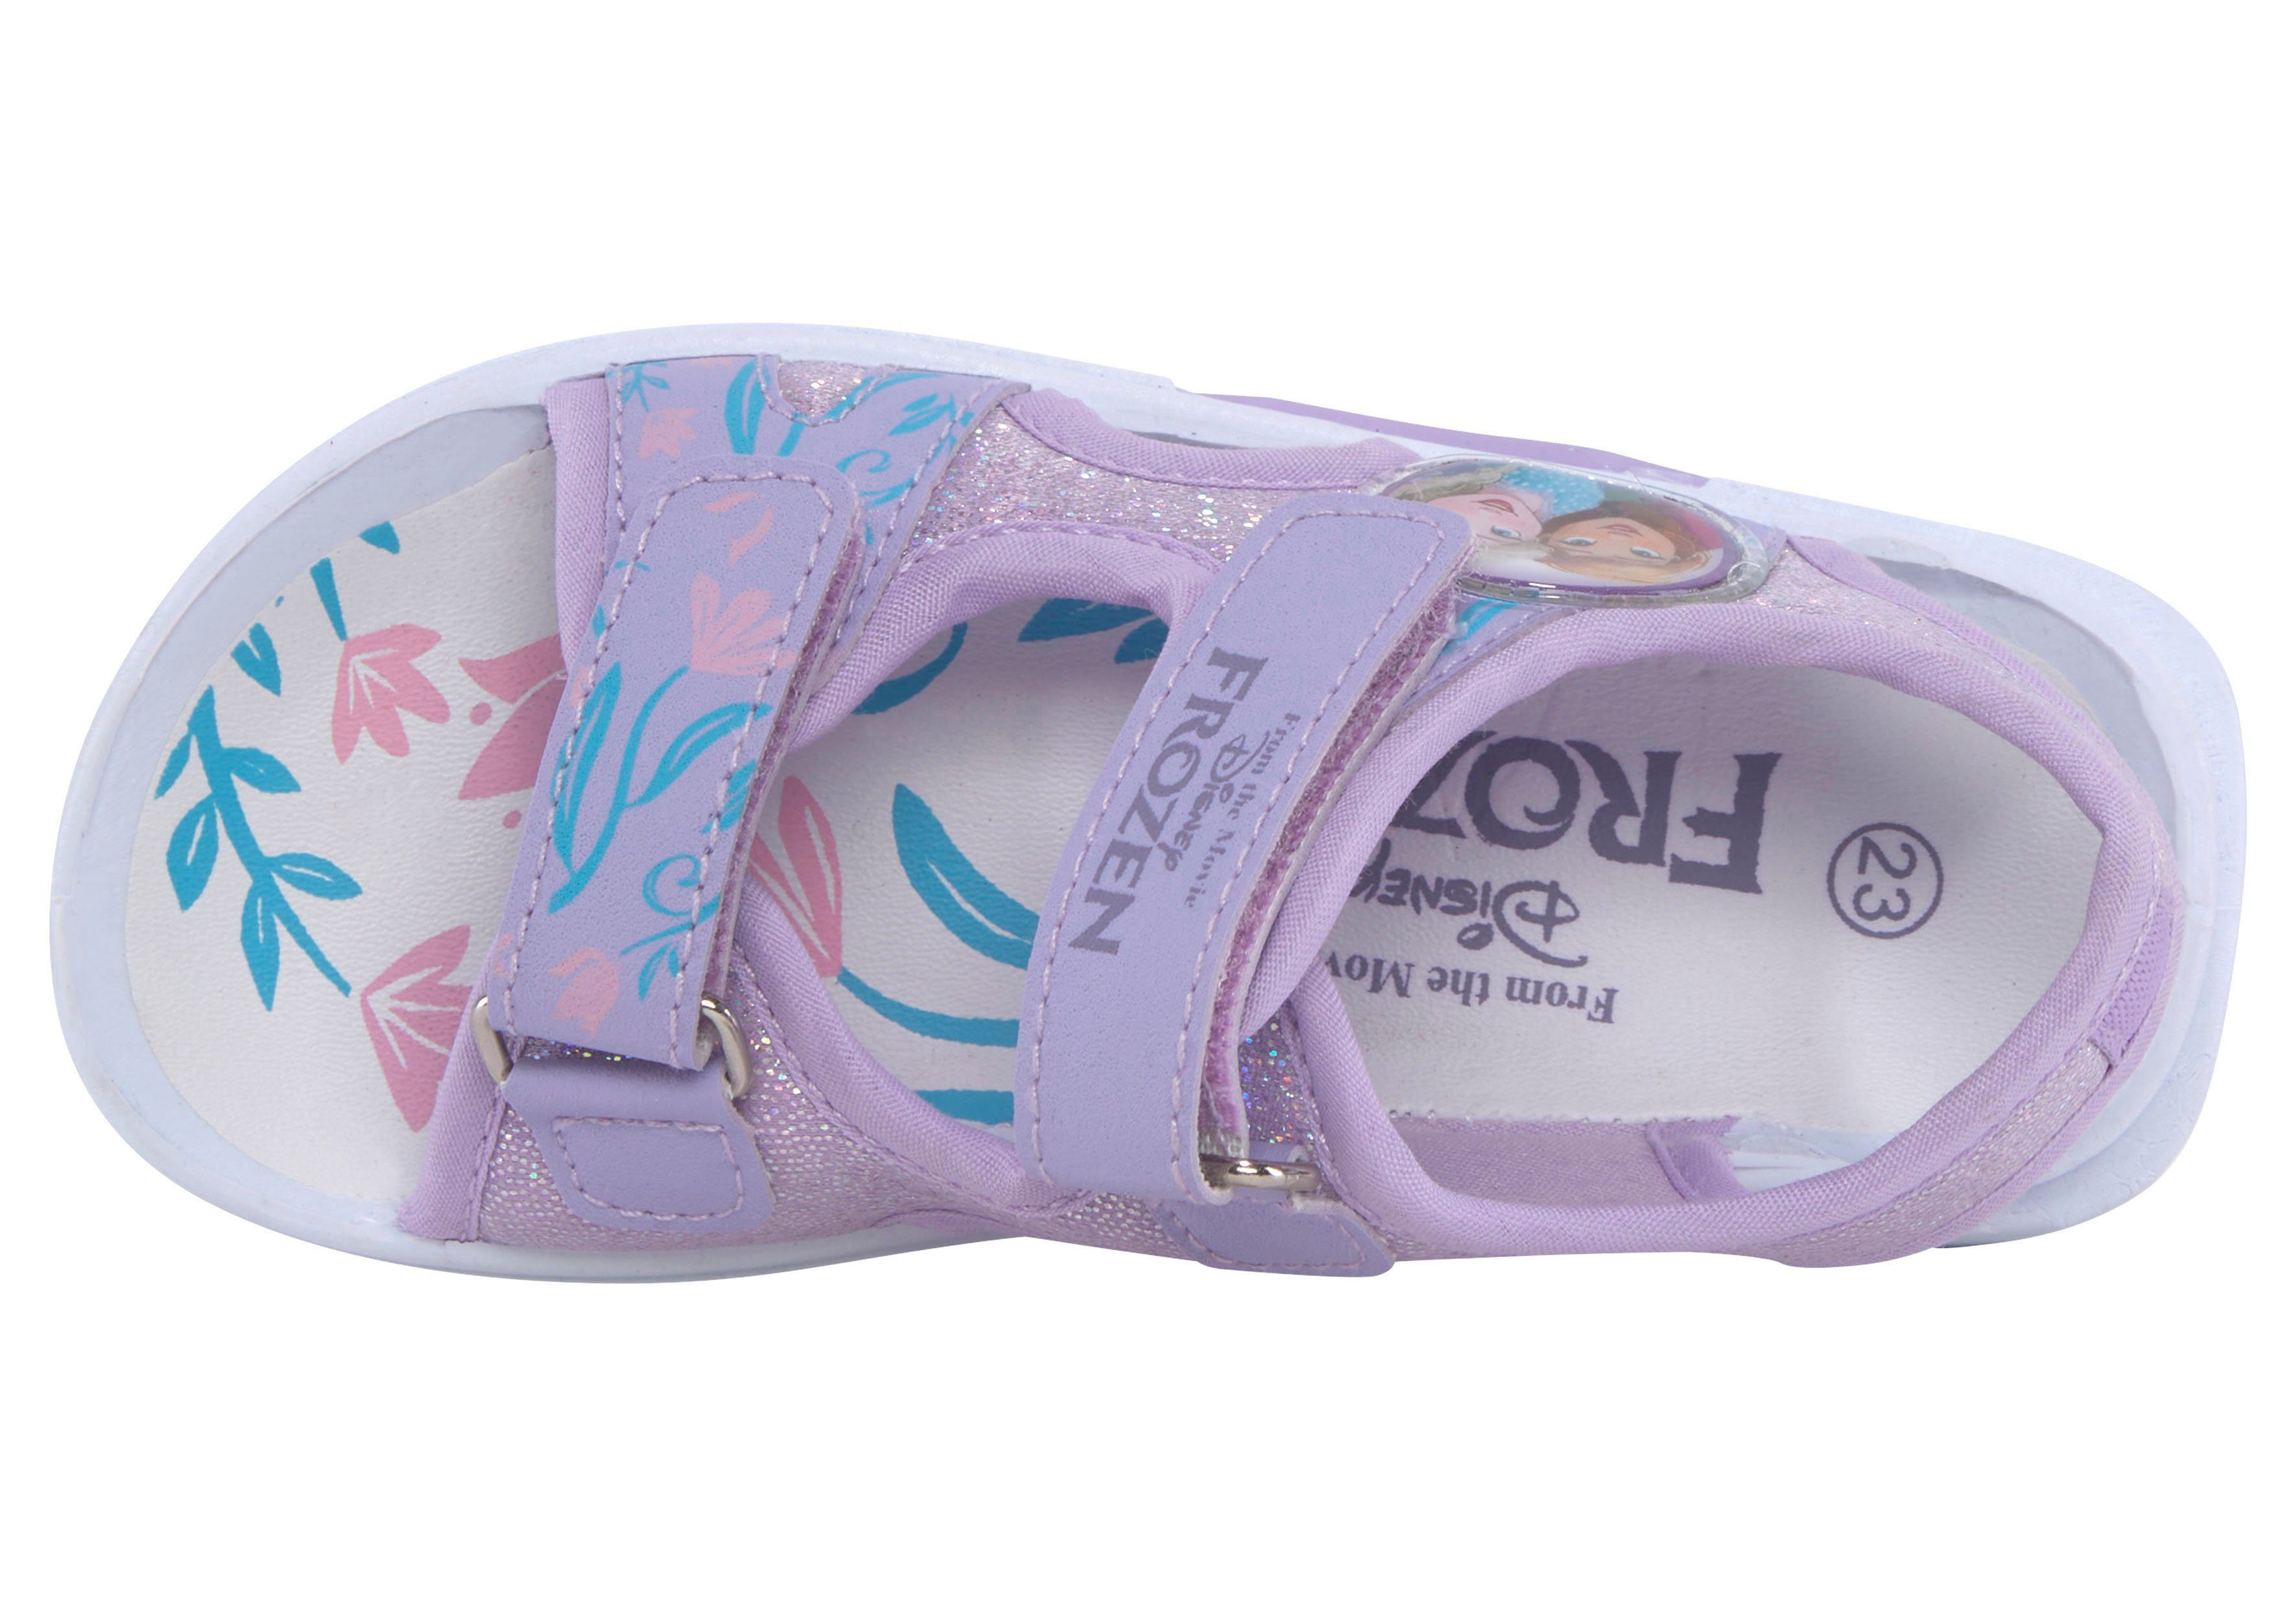 Frozen Klettverschluss Disney mit Sandale